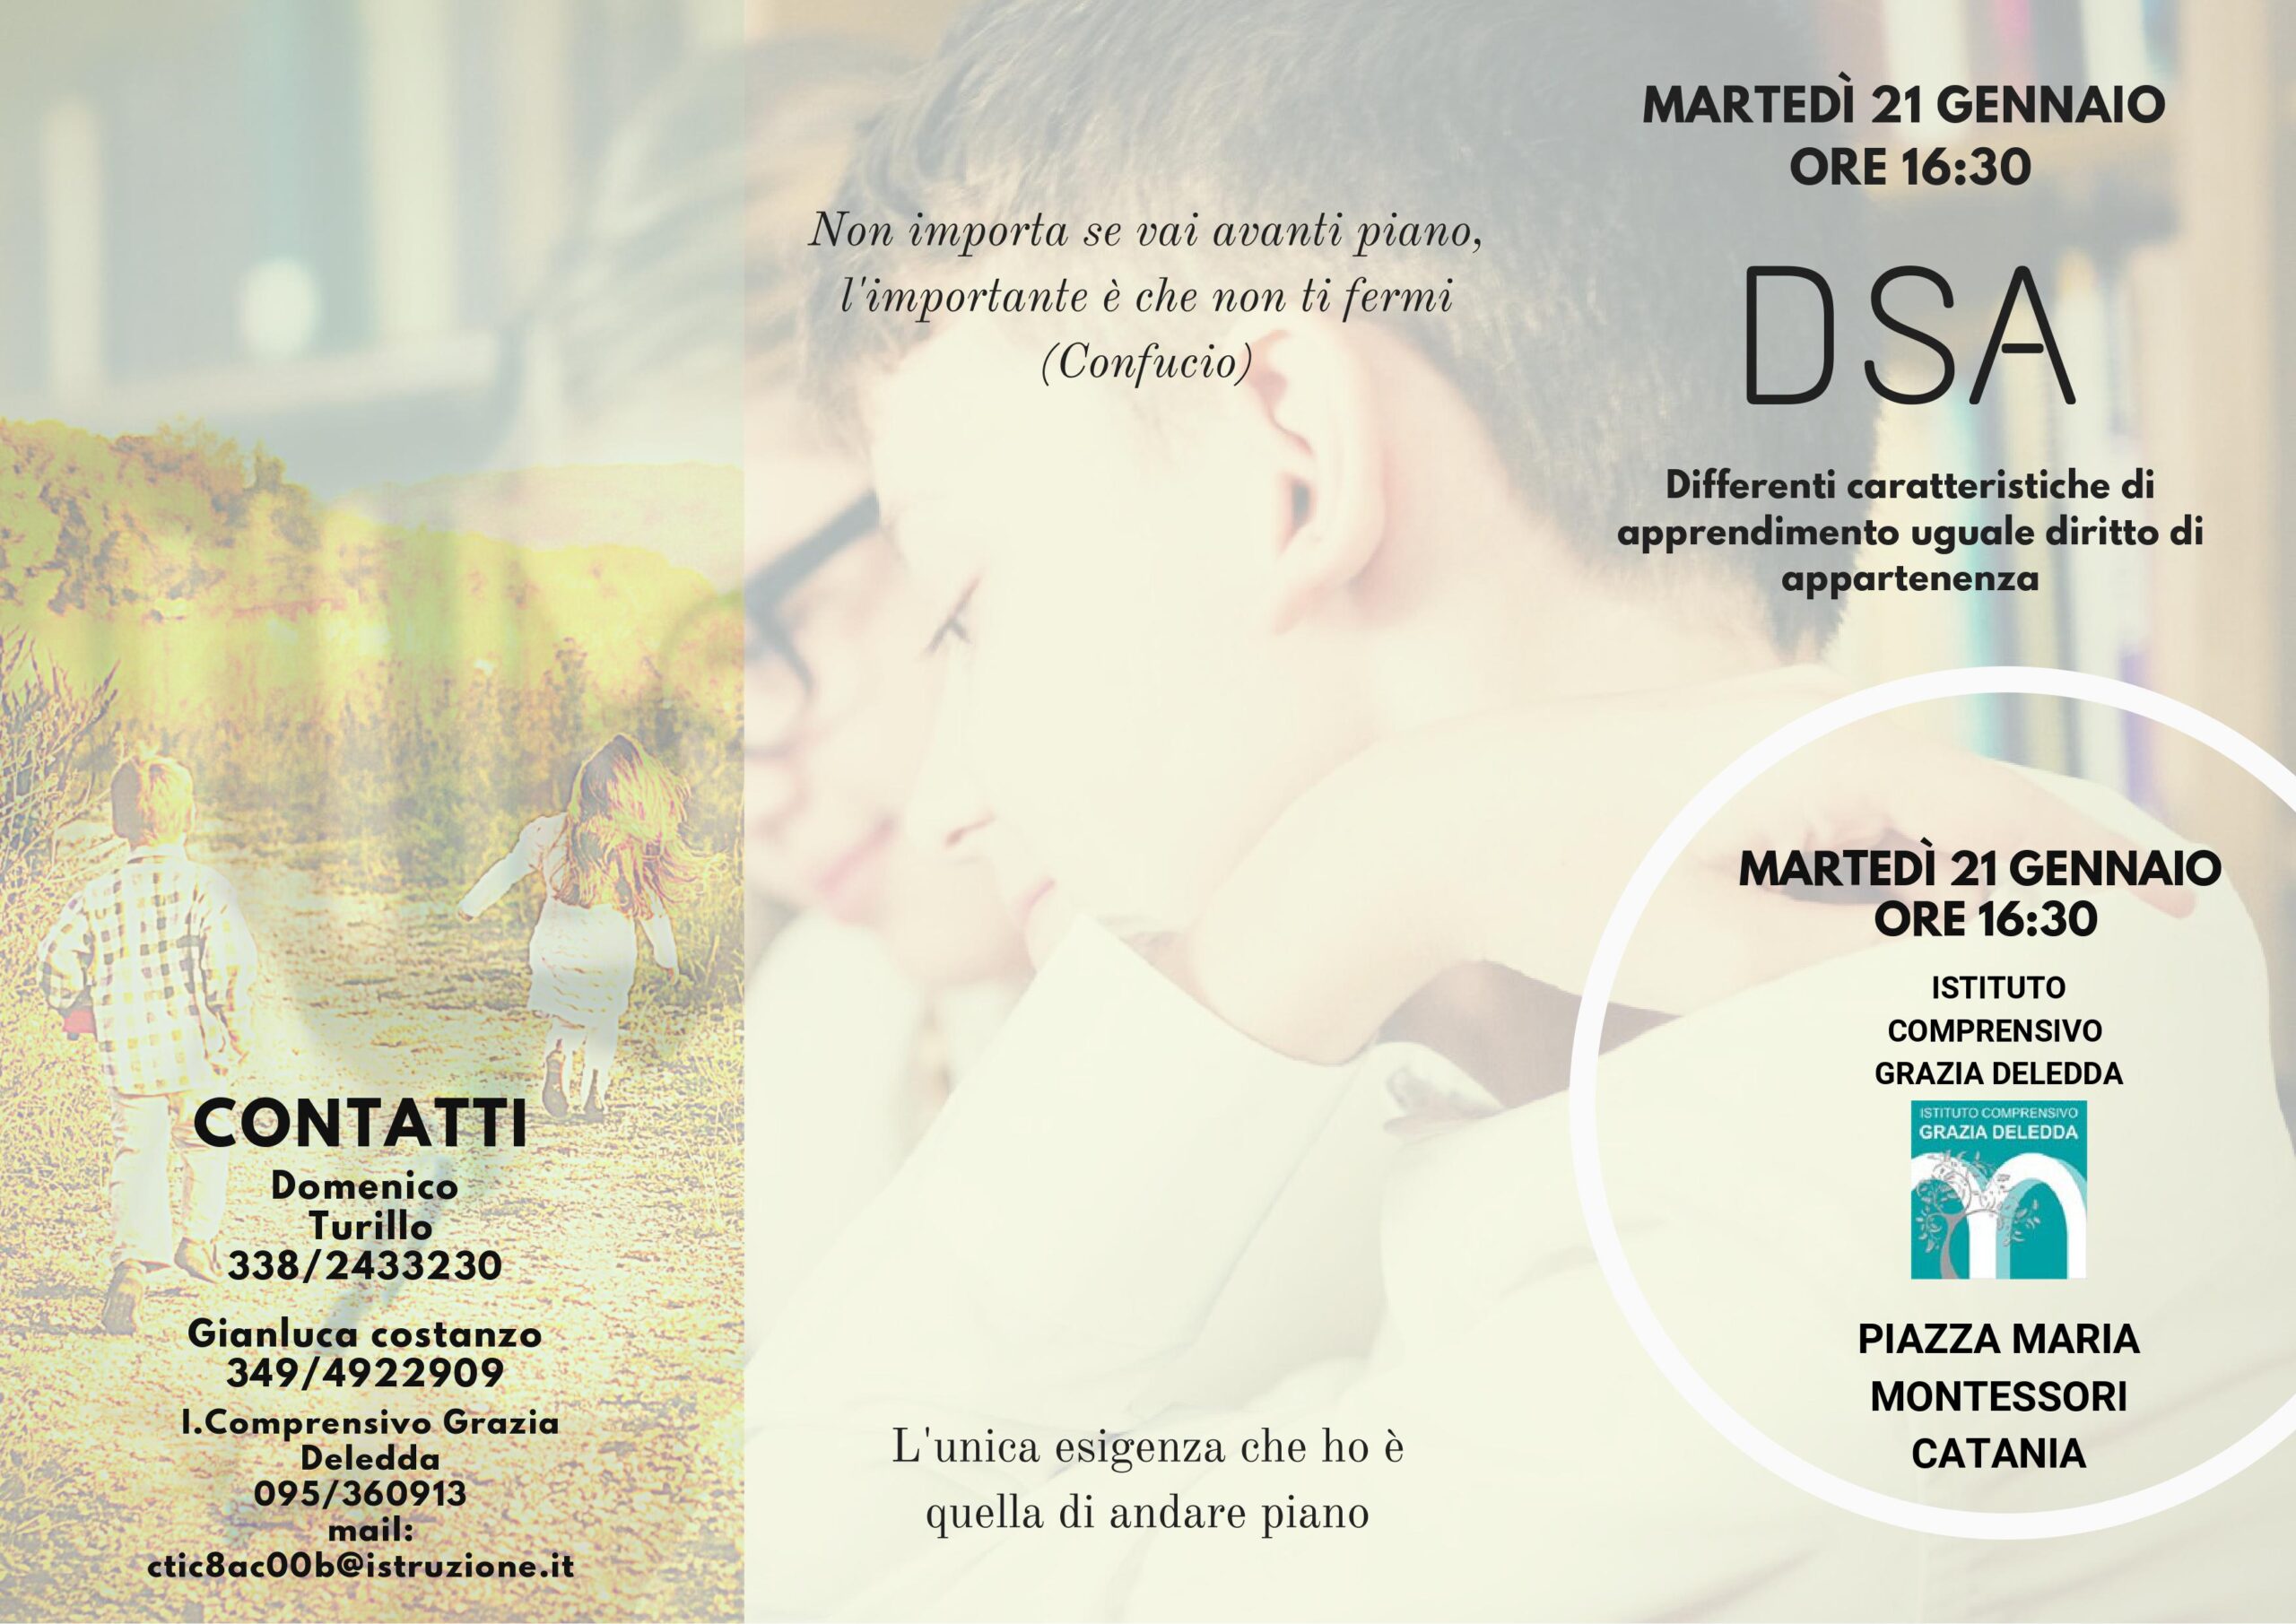 DSA-21 Gennaio 2020 Istituto Comprensivo-Grazia Deledda-Catania